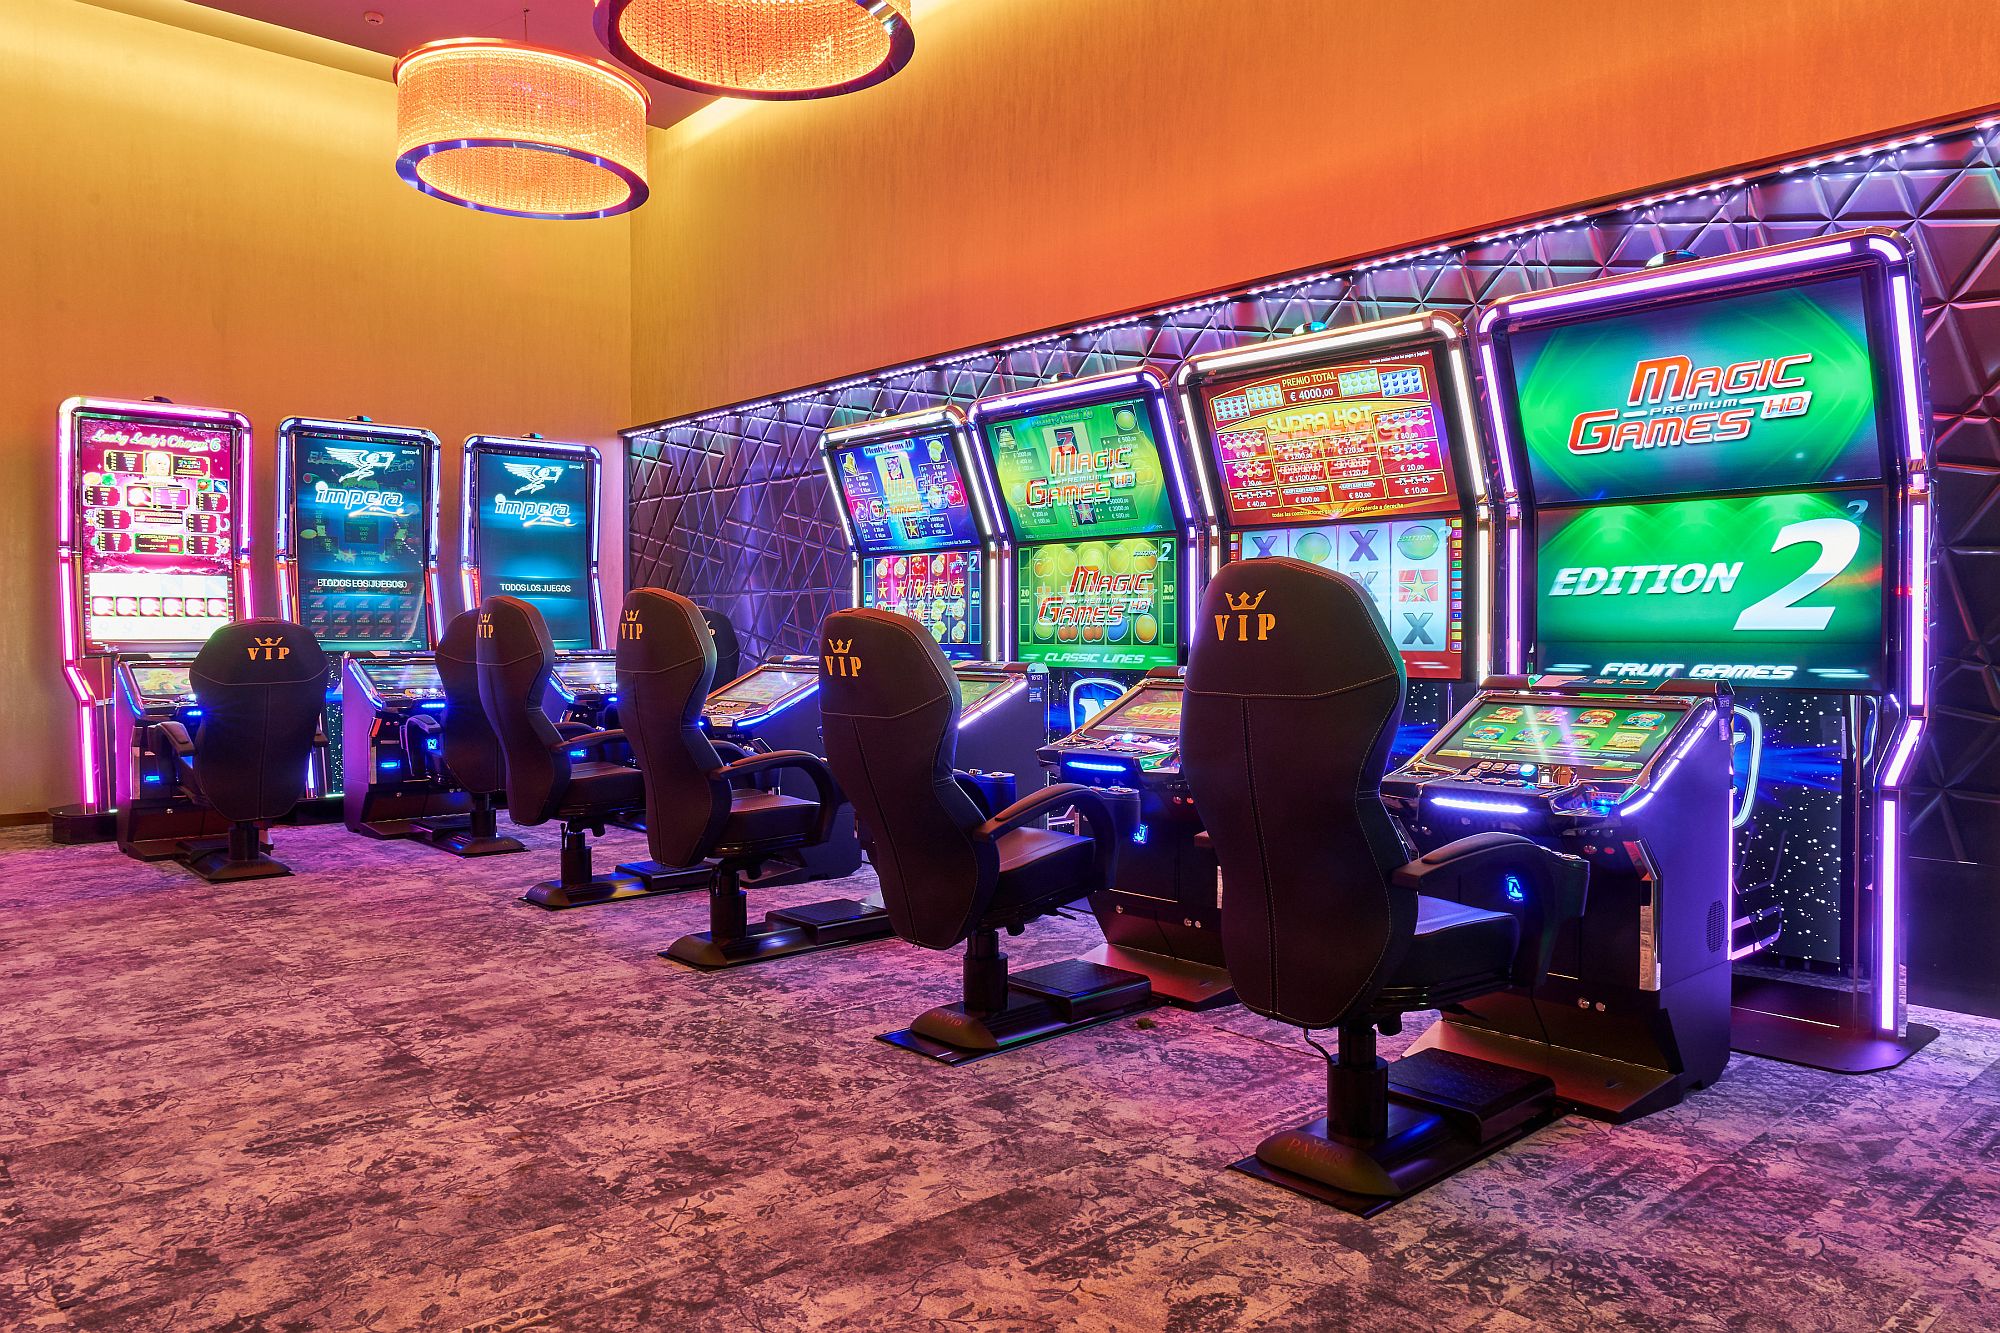 Лучшие игровые автоматы green hill casino biz. Адмирал 888 игровые автоматы. Игровые автоматы Новоматик. Игровой зал Адмирал. Казино Адмирал.